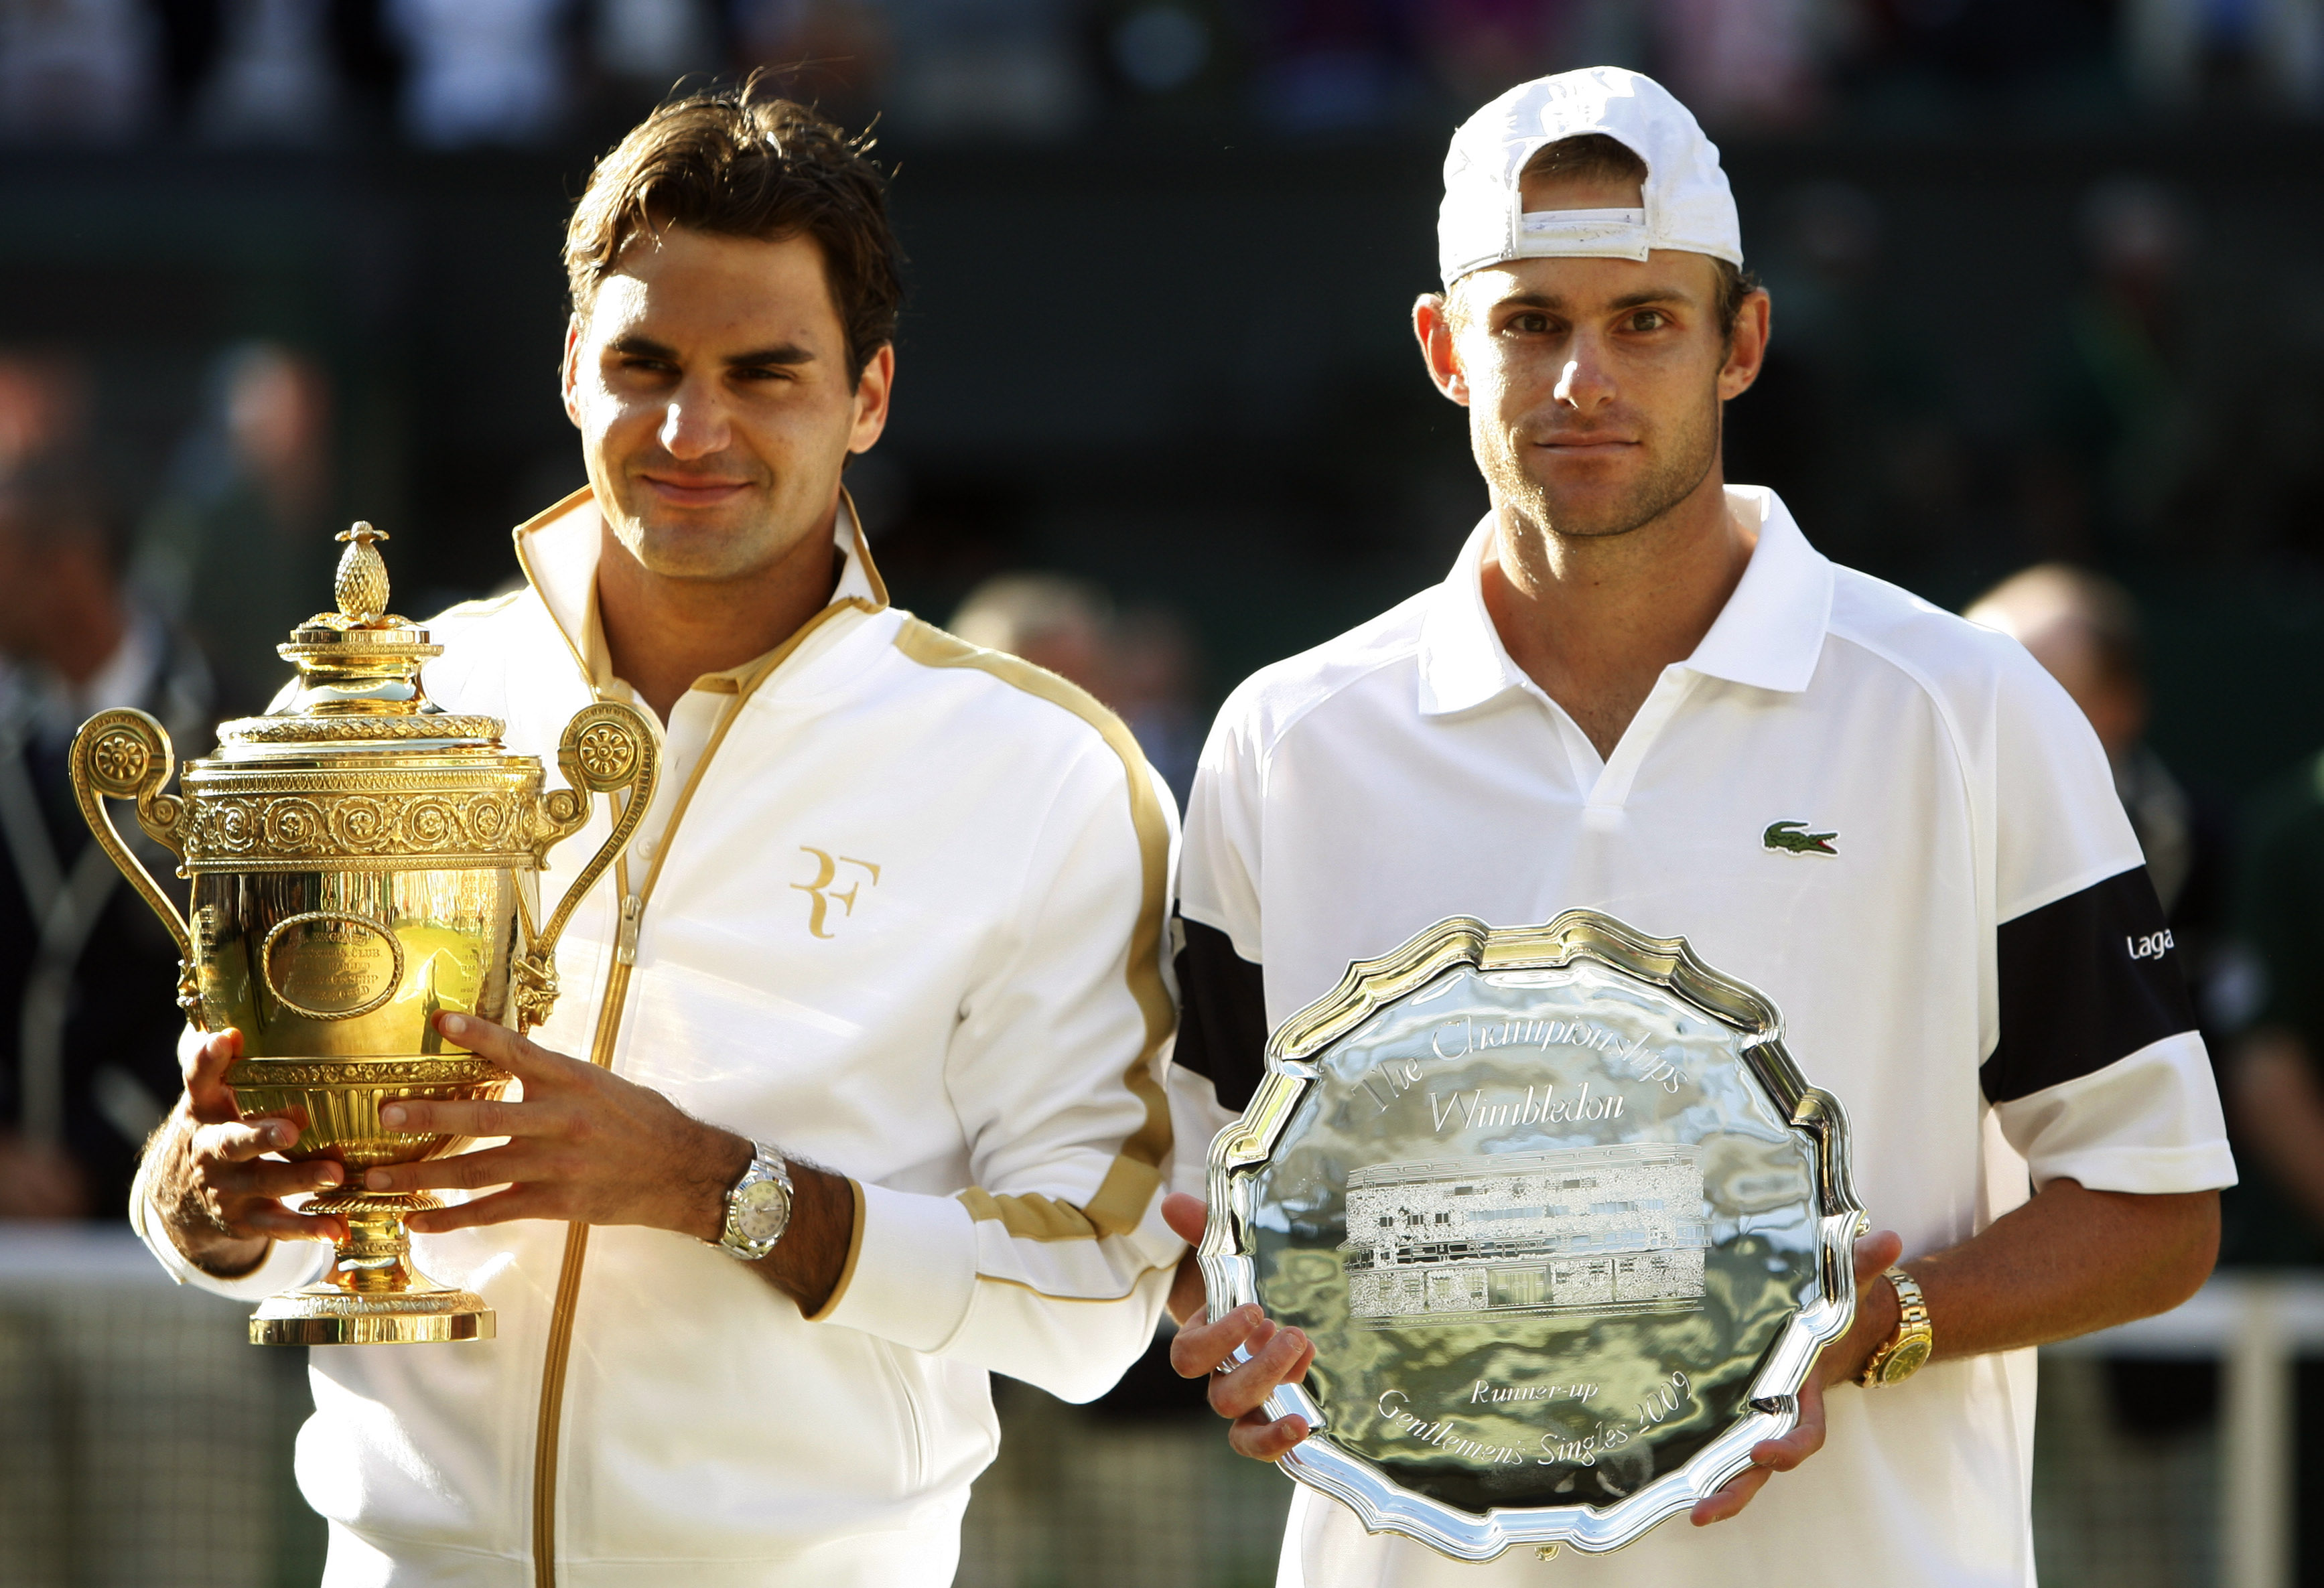 Return Winners The 2009 men's Wimbledon final